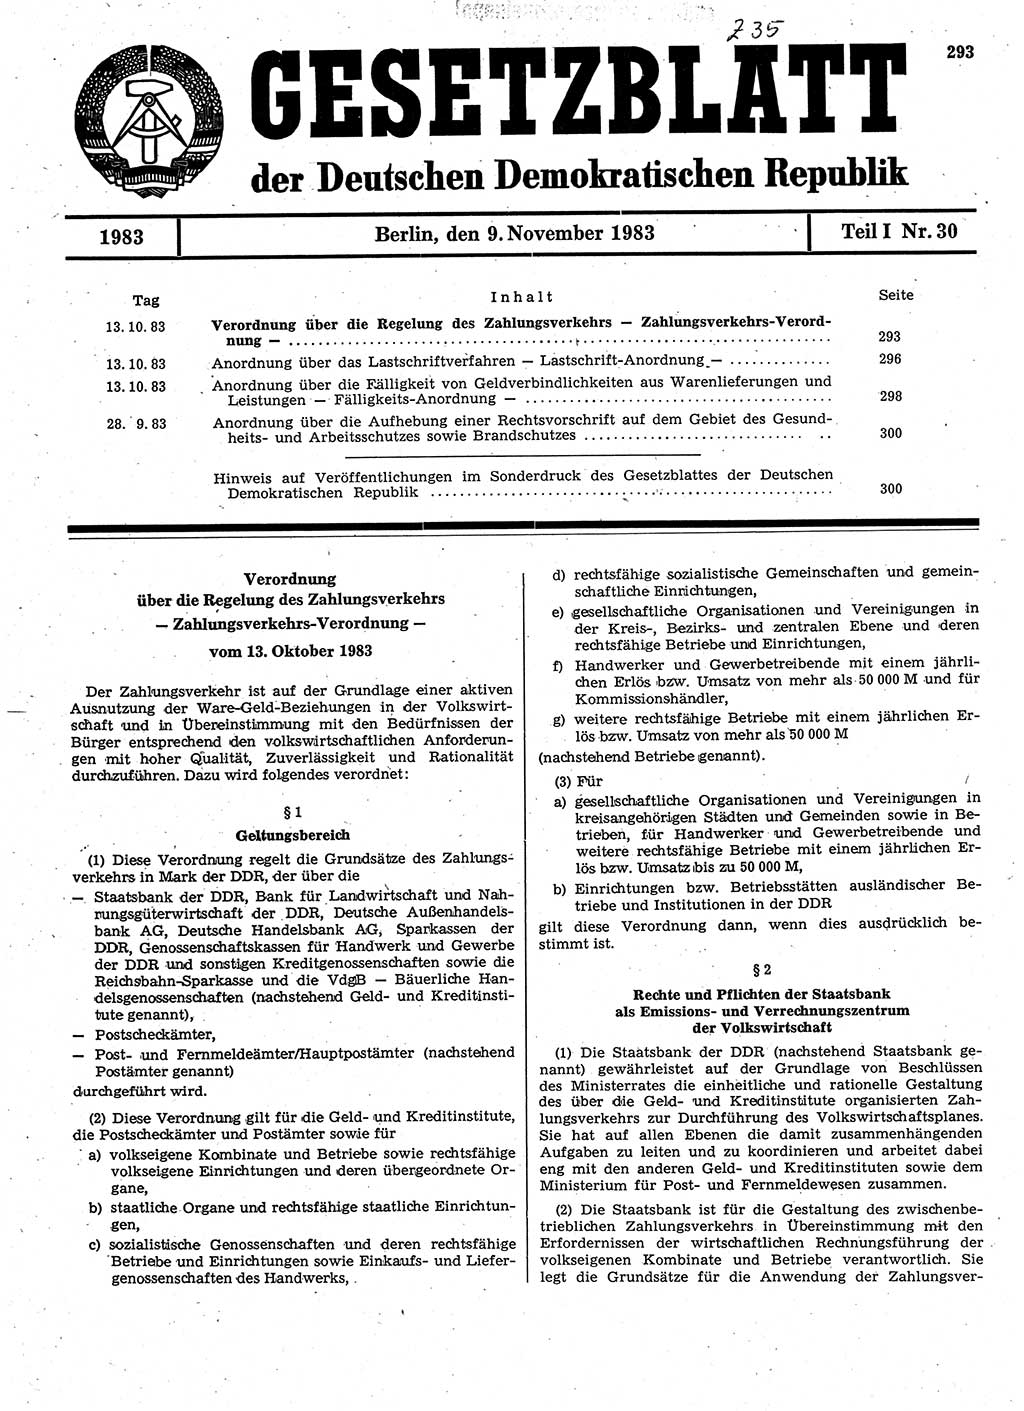 Gesetzblatt (GBl.) der Deutschen Demokratischen Republik (DDR) Teil Ⅰ 1983, Seite 293 (GBl. DDR Ⅰ 1983, S. 293)